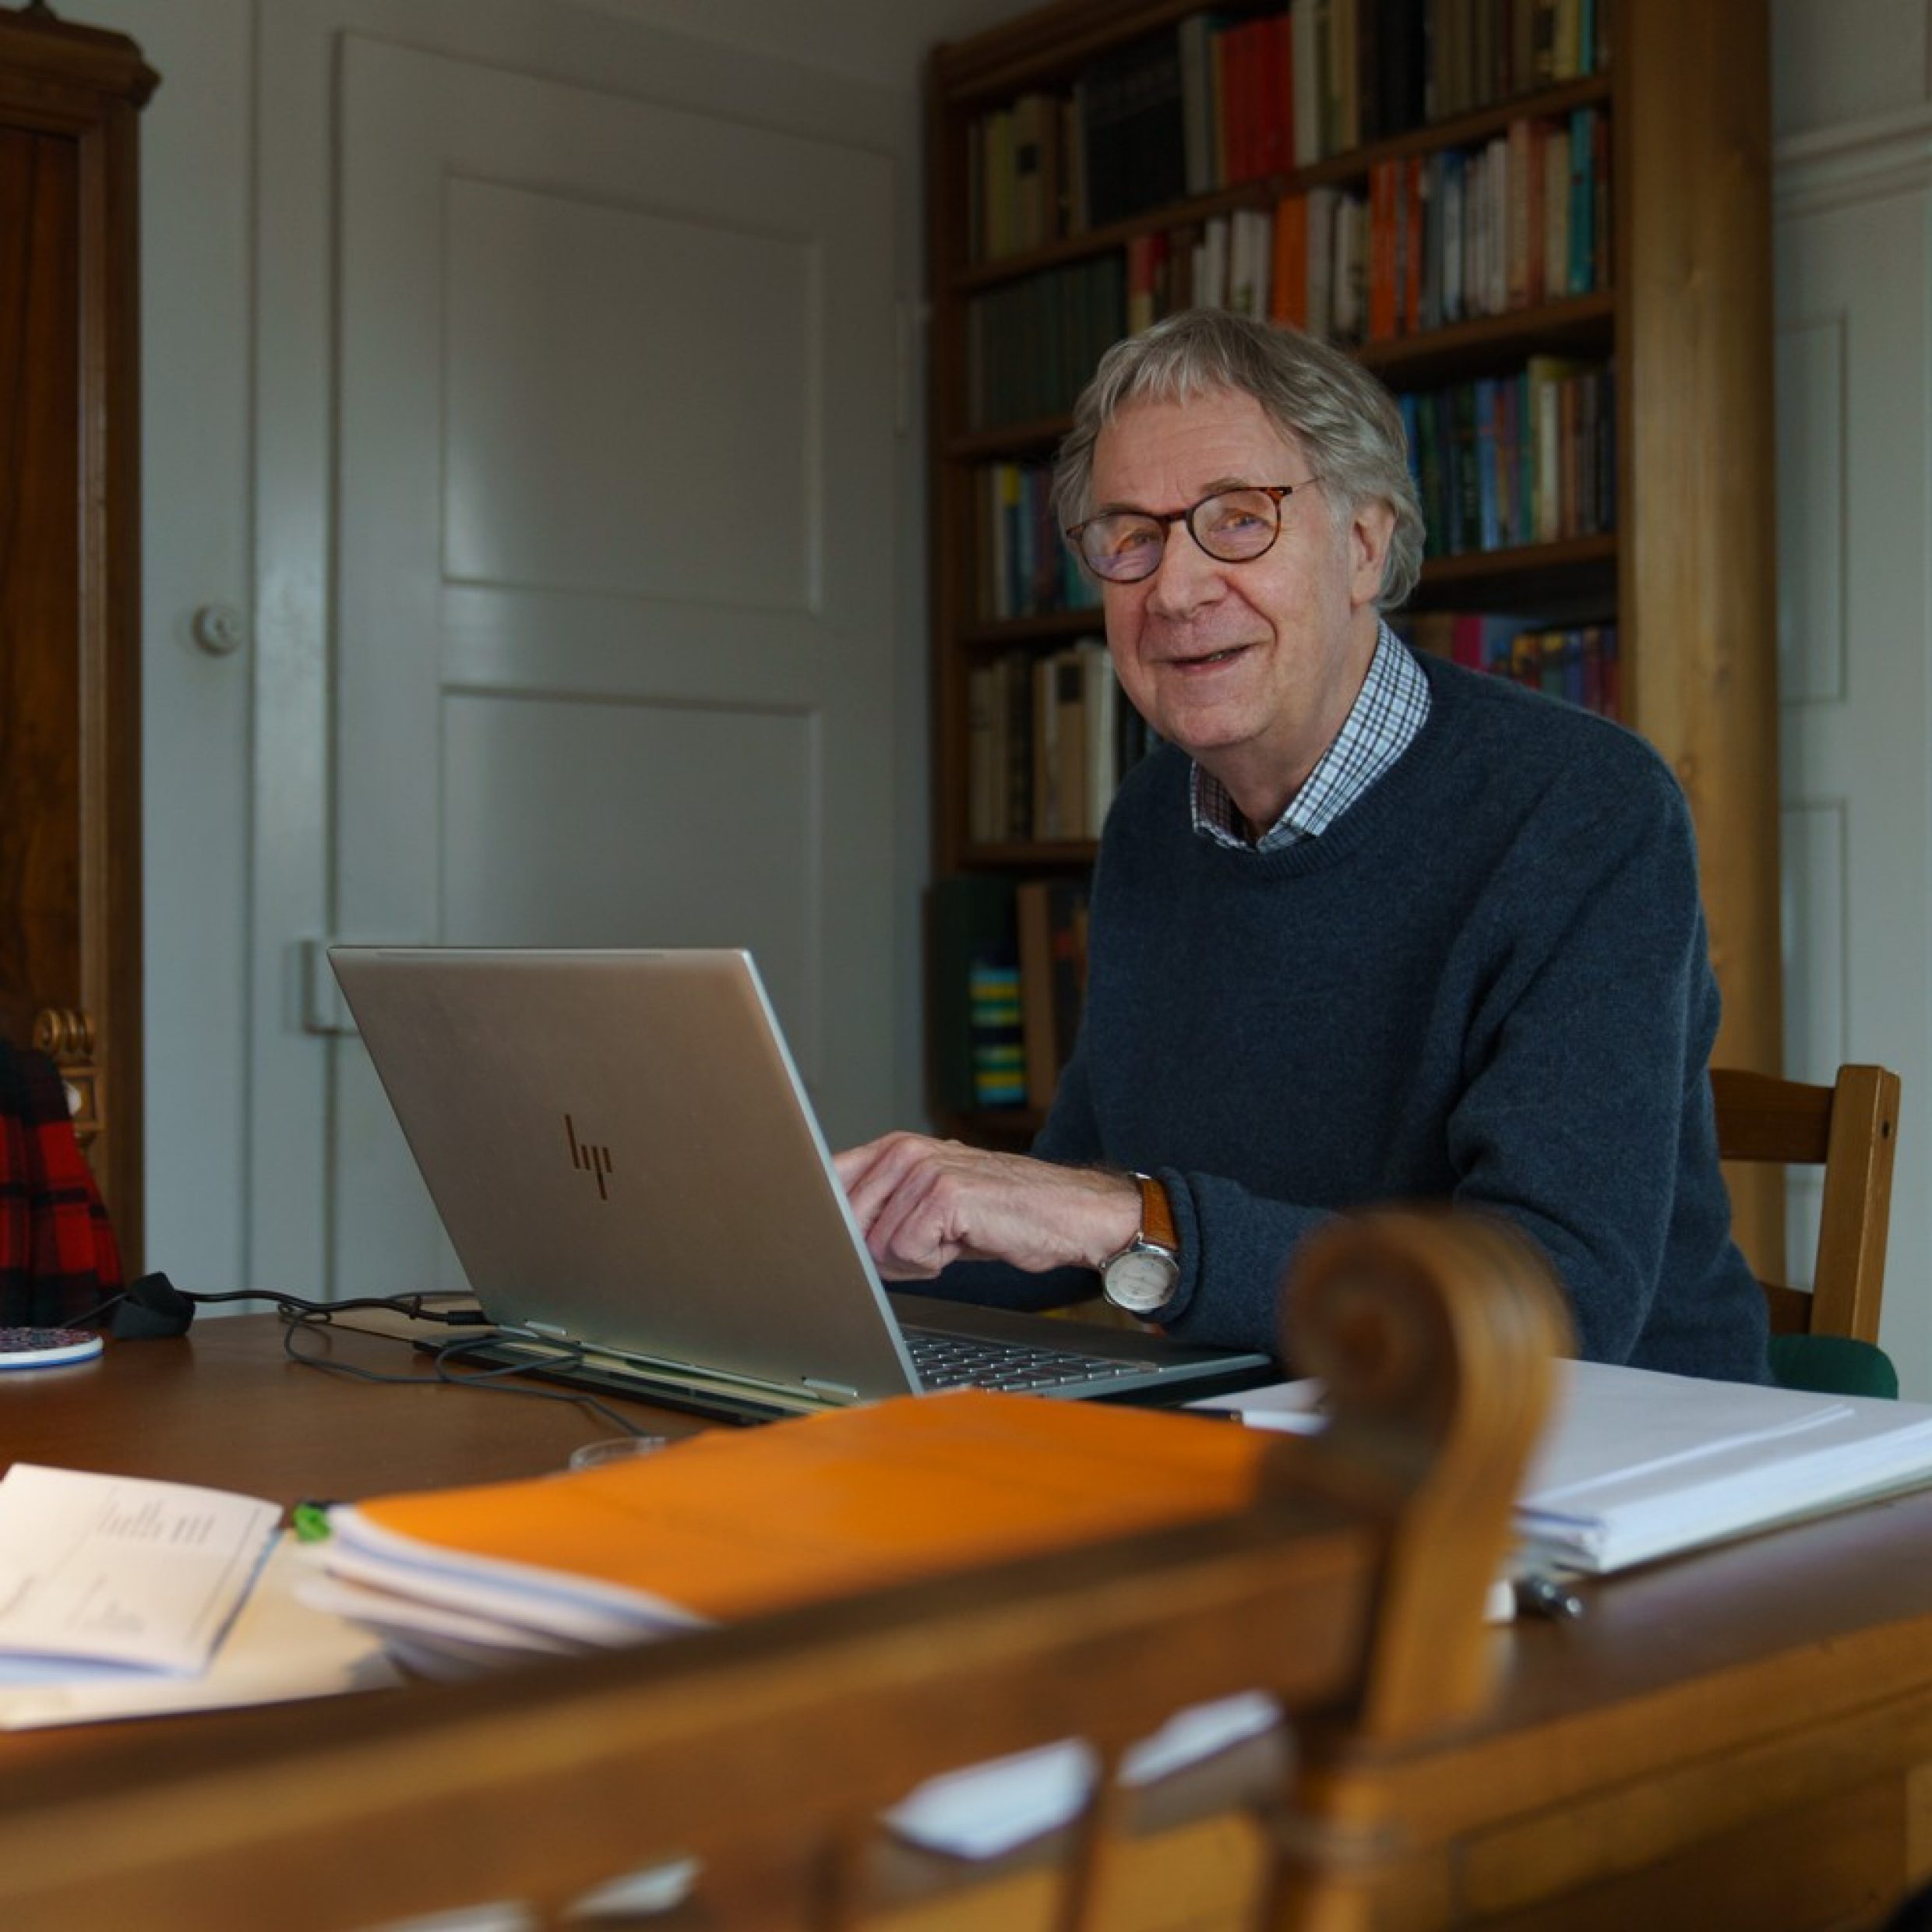 Un homme âgé est assis à une table devant un ordinateur portable et montre quelque chose à l’écran. Il sourit à l’objectif. Il a les cheveux gris, porte des lunettes et un pull bleu.  eine Brille und einen blauen Pullover. 